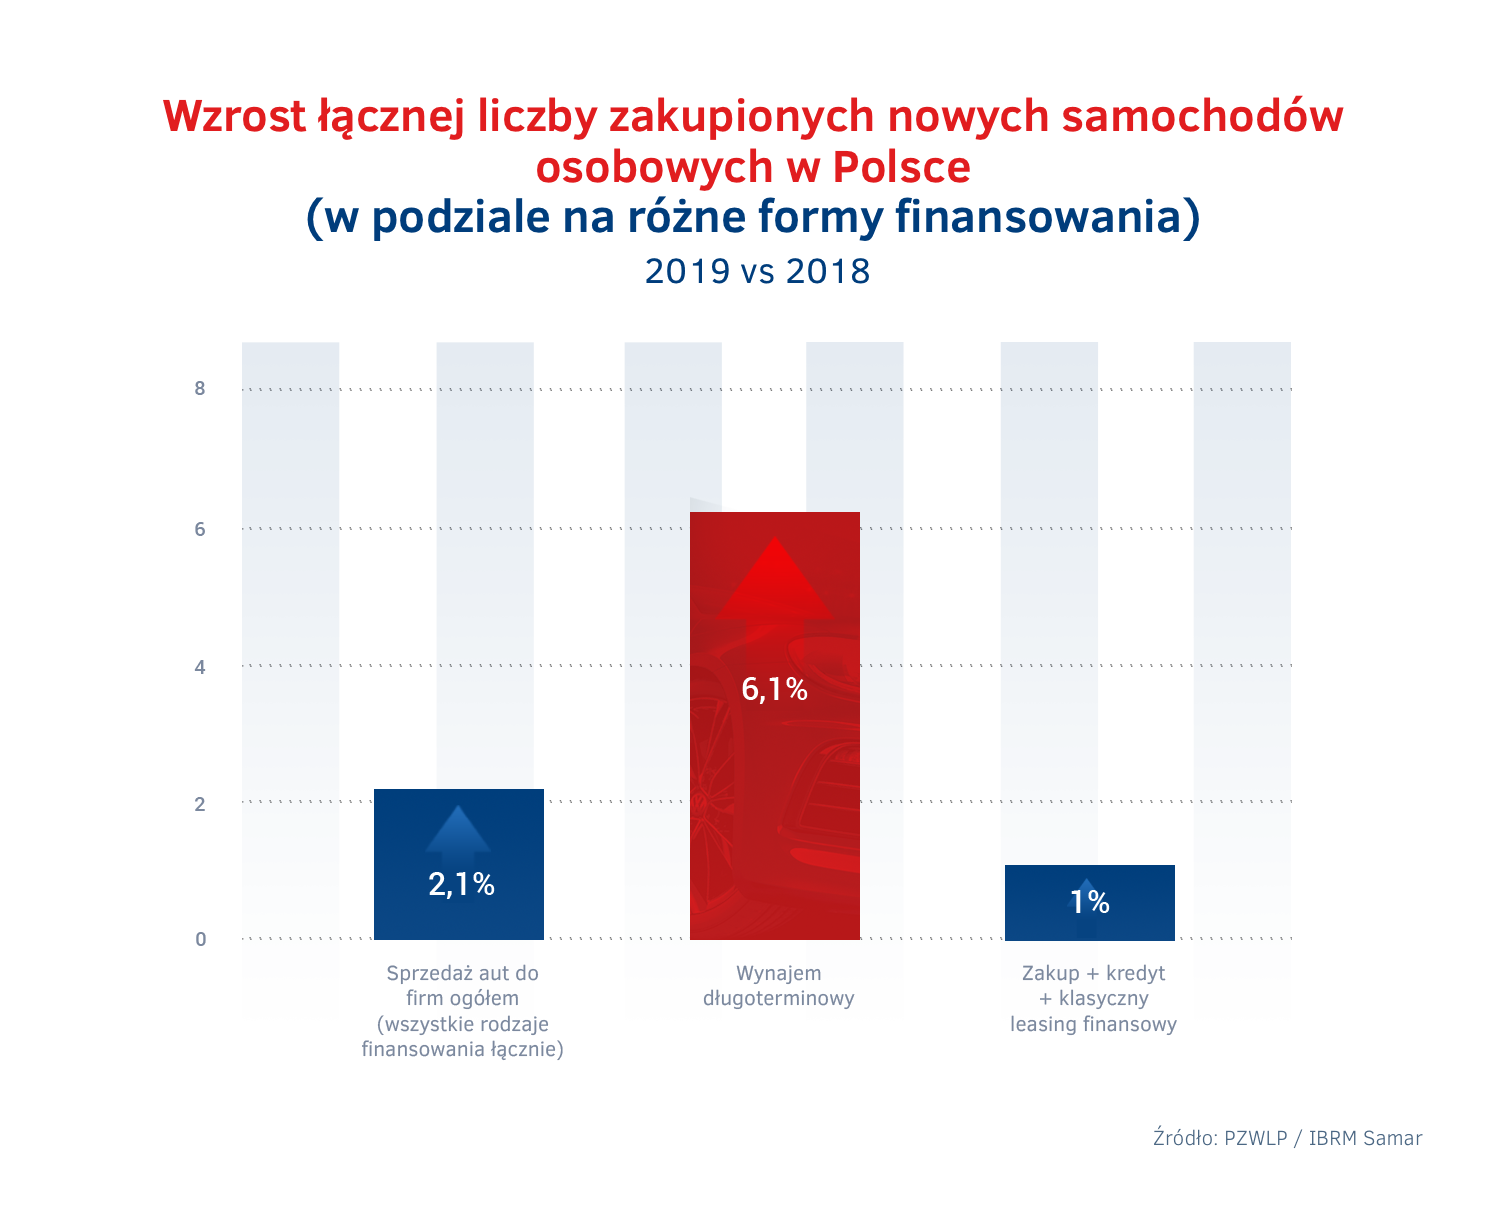 Wzrost sprzedazy aut do firm w Polsce 2019 – wynajem dlugoterminowy vs konkurencja